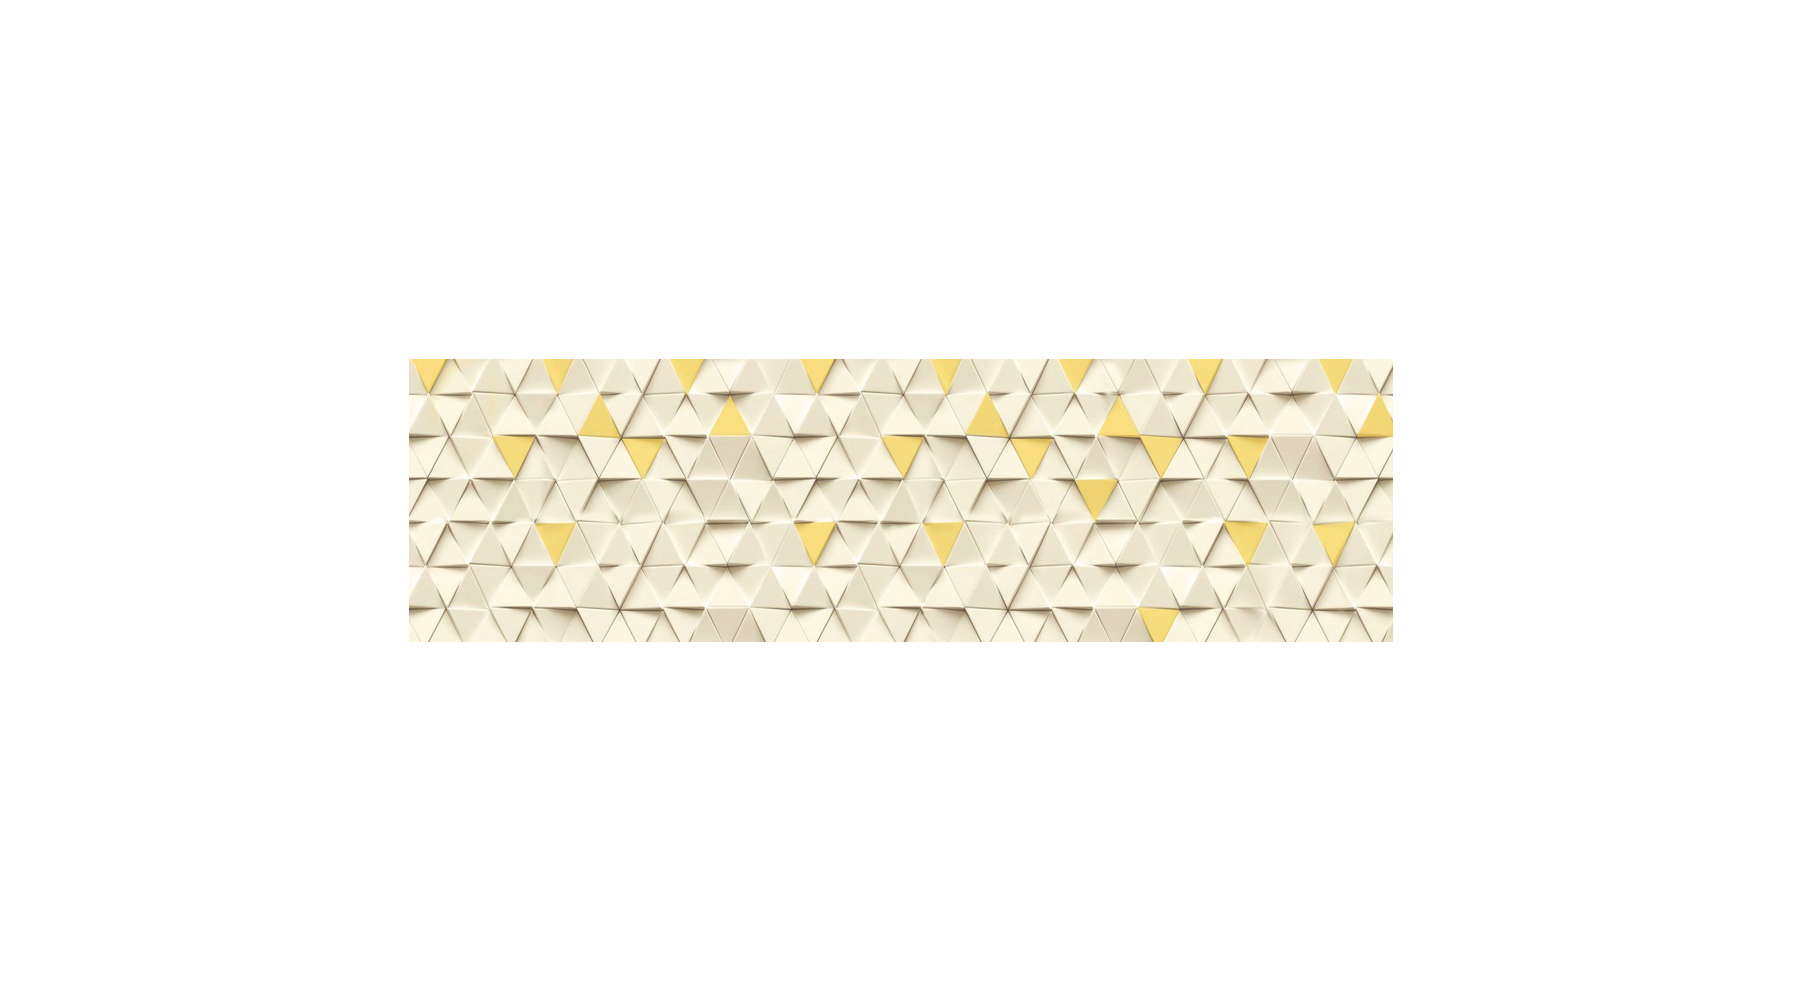 91097382 Стеновая панель Желтые треугольники 200x60x0.2 см поликарбонат цвет разноцветный STLM-0482889 СТУДИЯ ФАРТУКОВ